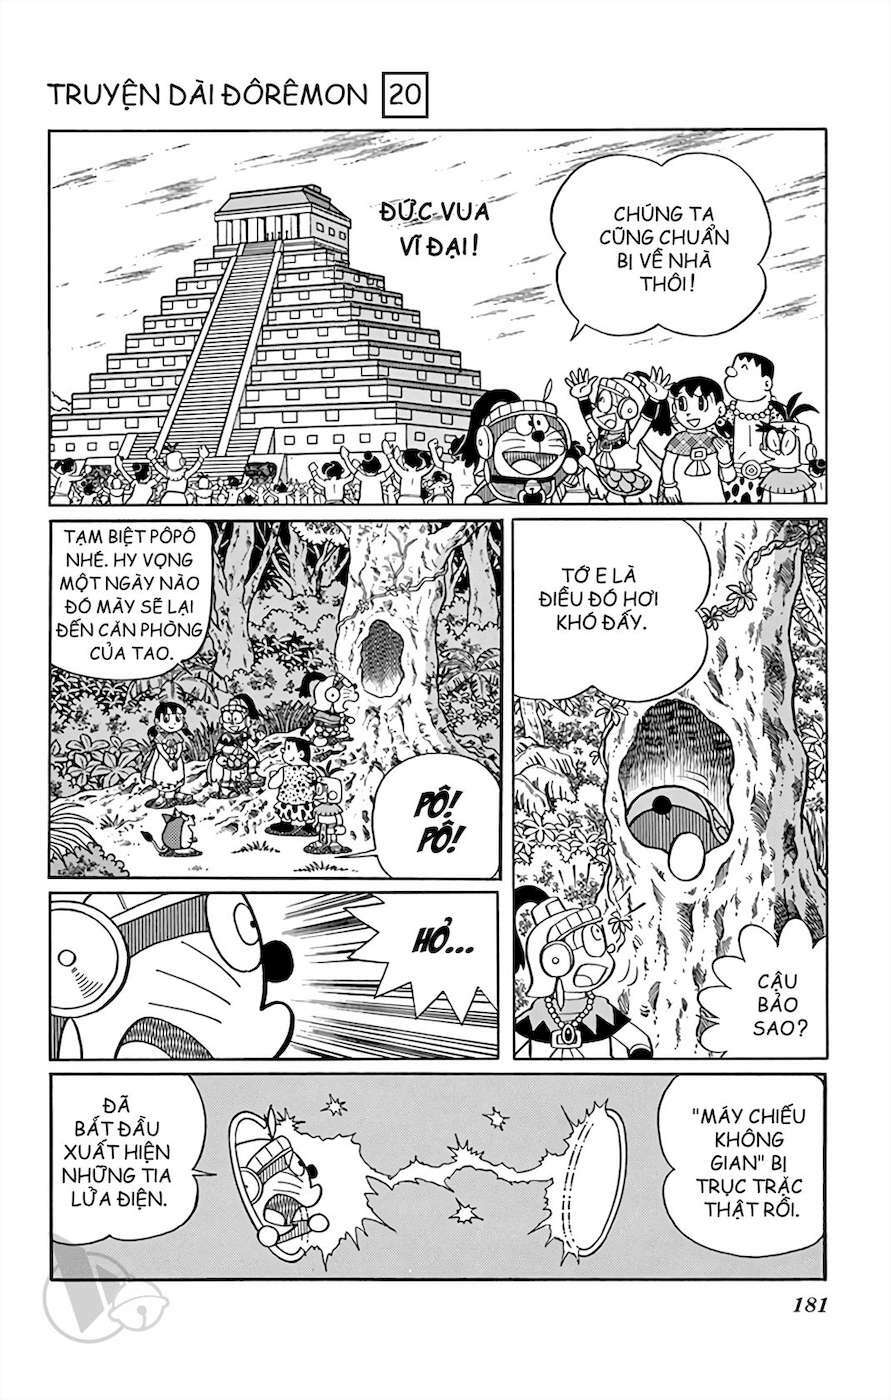 Truyện Tranh Doraemon: Truyền Thuyết Về Vua Mặt Trời Nôbita trang 180